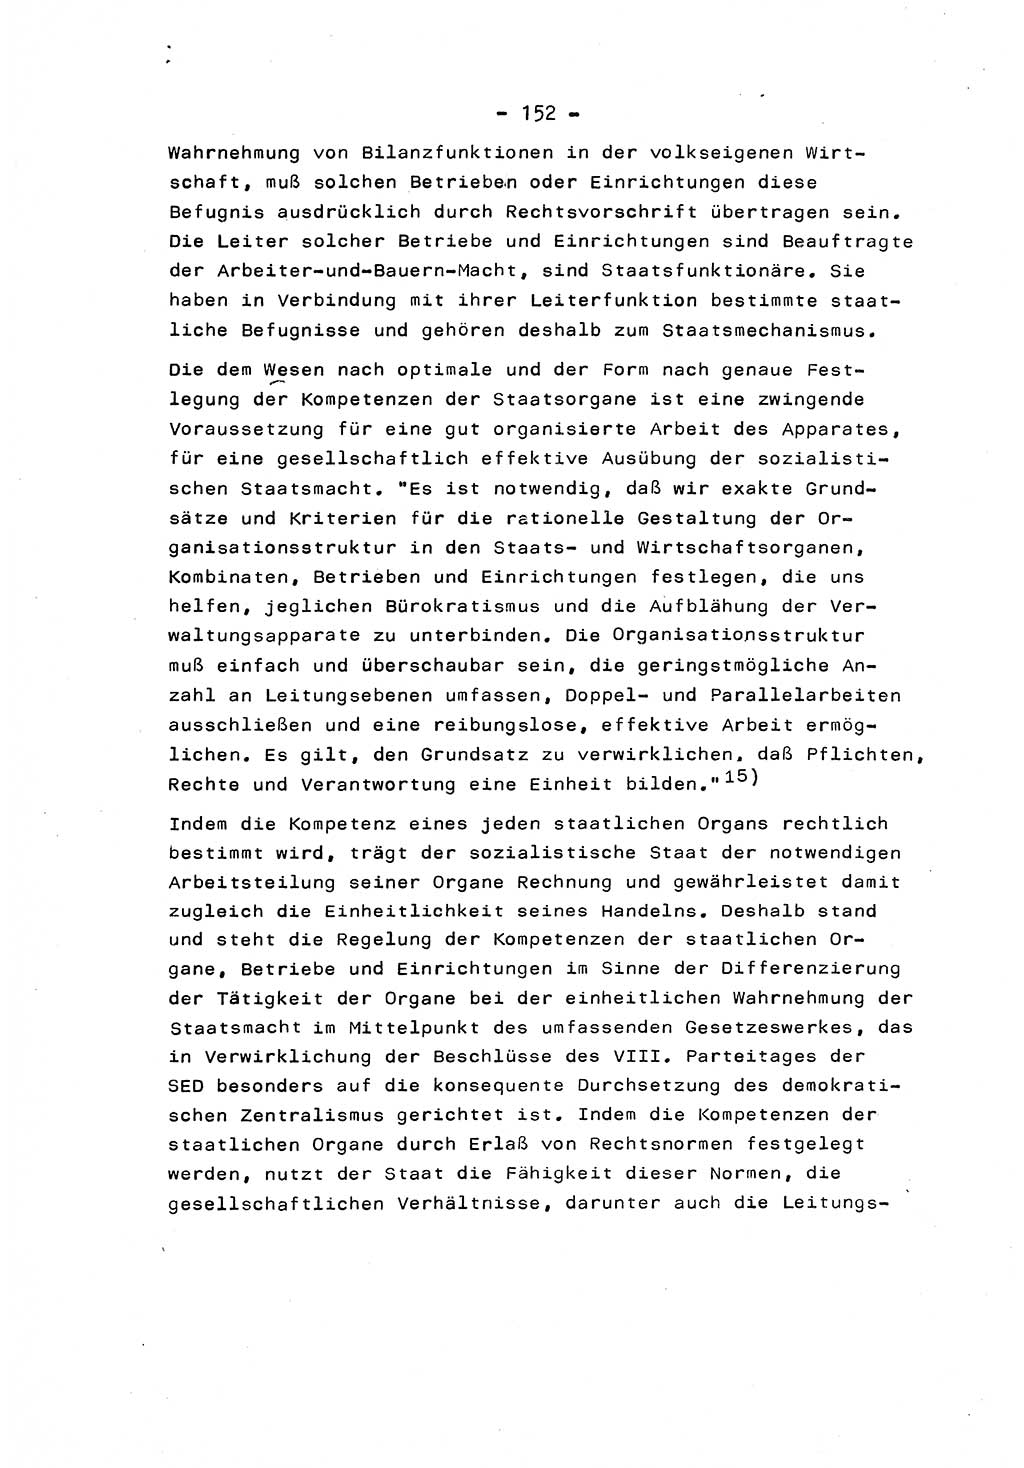 Marxistisch-leninistische Staats- und Rechtstheorie [Deutsche Demokratische Republik (DDR)] 1975, Seite 152 (ML St.-R.-Th. DDR 1975, S. 152)